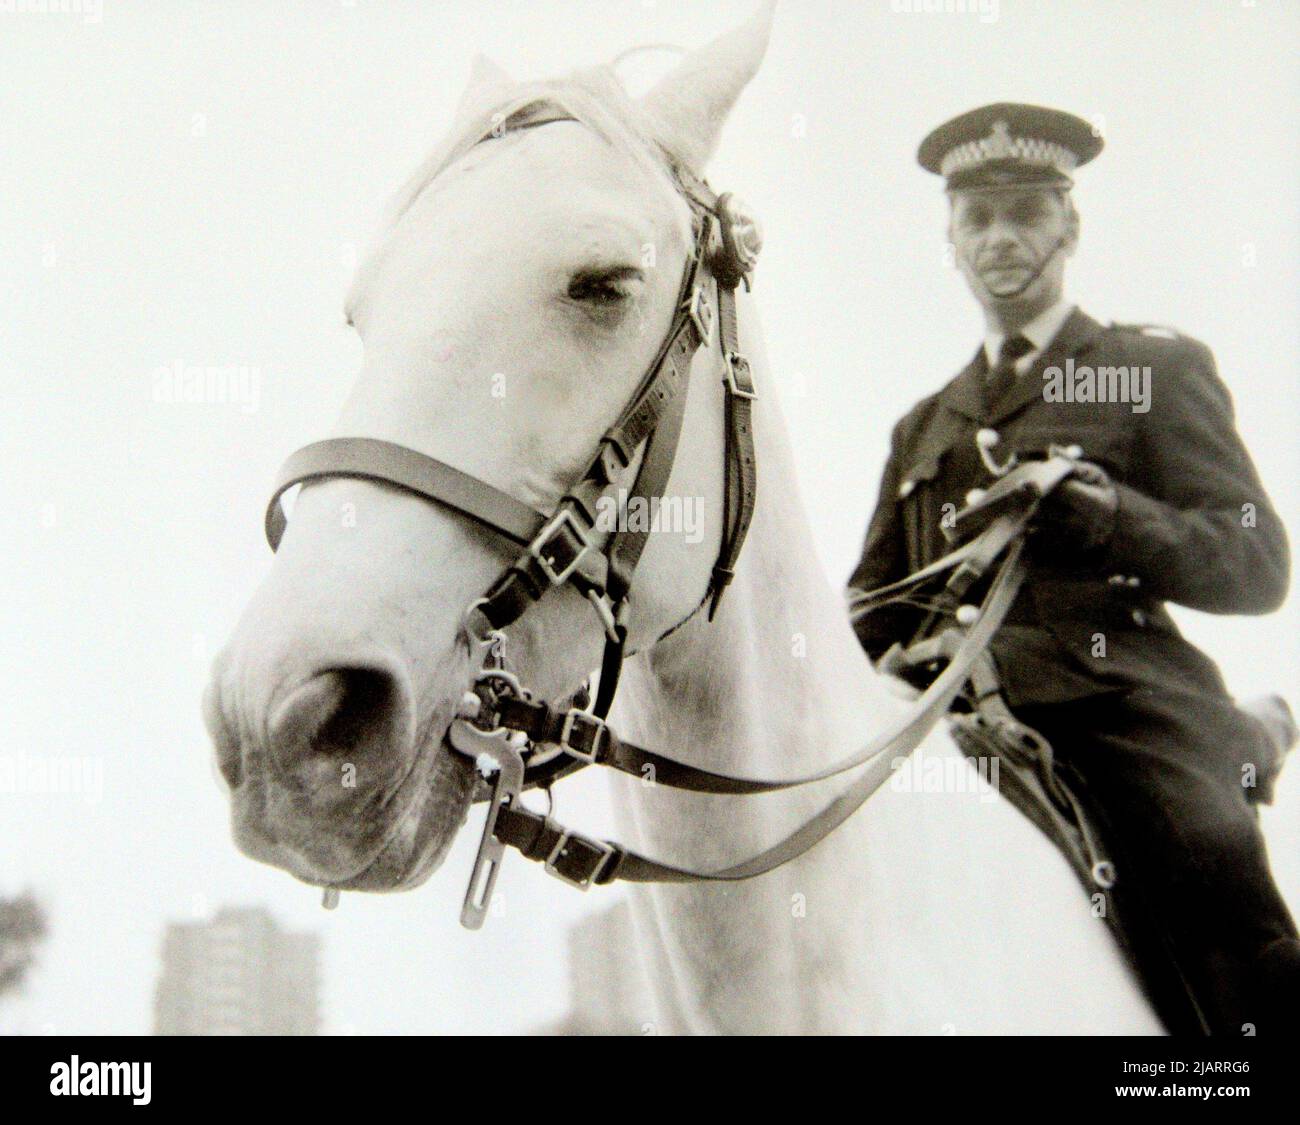 Un policier à cheval, commandant une manifestation contre le racisme à Leicester, Angleterre, Royaume-Uni, Îles britanniques, en 1972. Banque D'Images